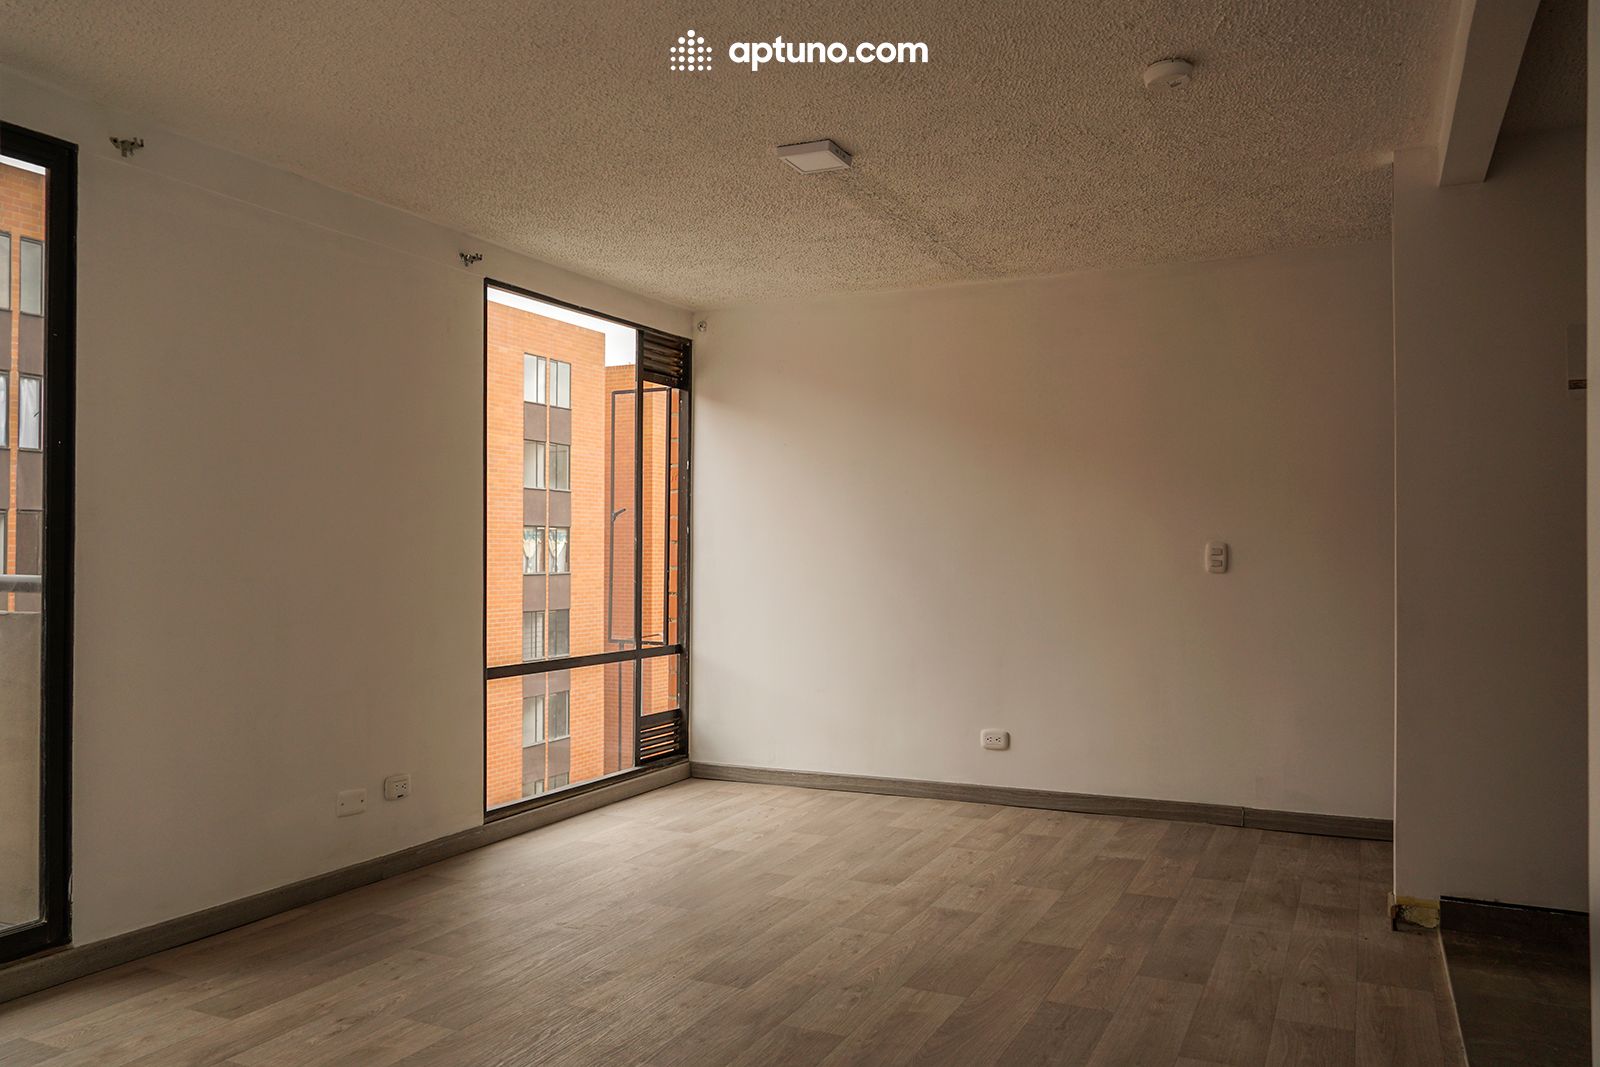 Apartamento en arriendo Centro 65 m² - $ 775.000,00